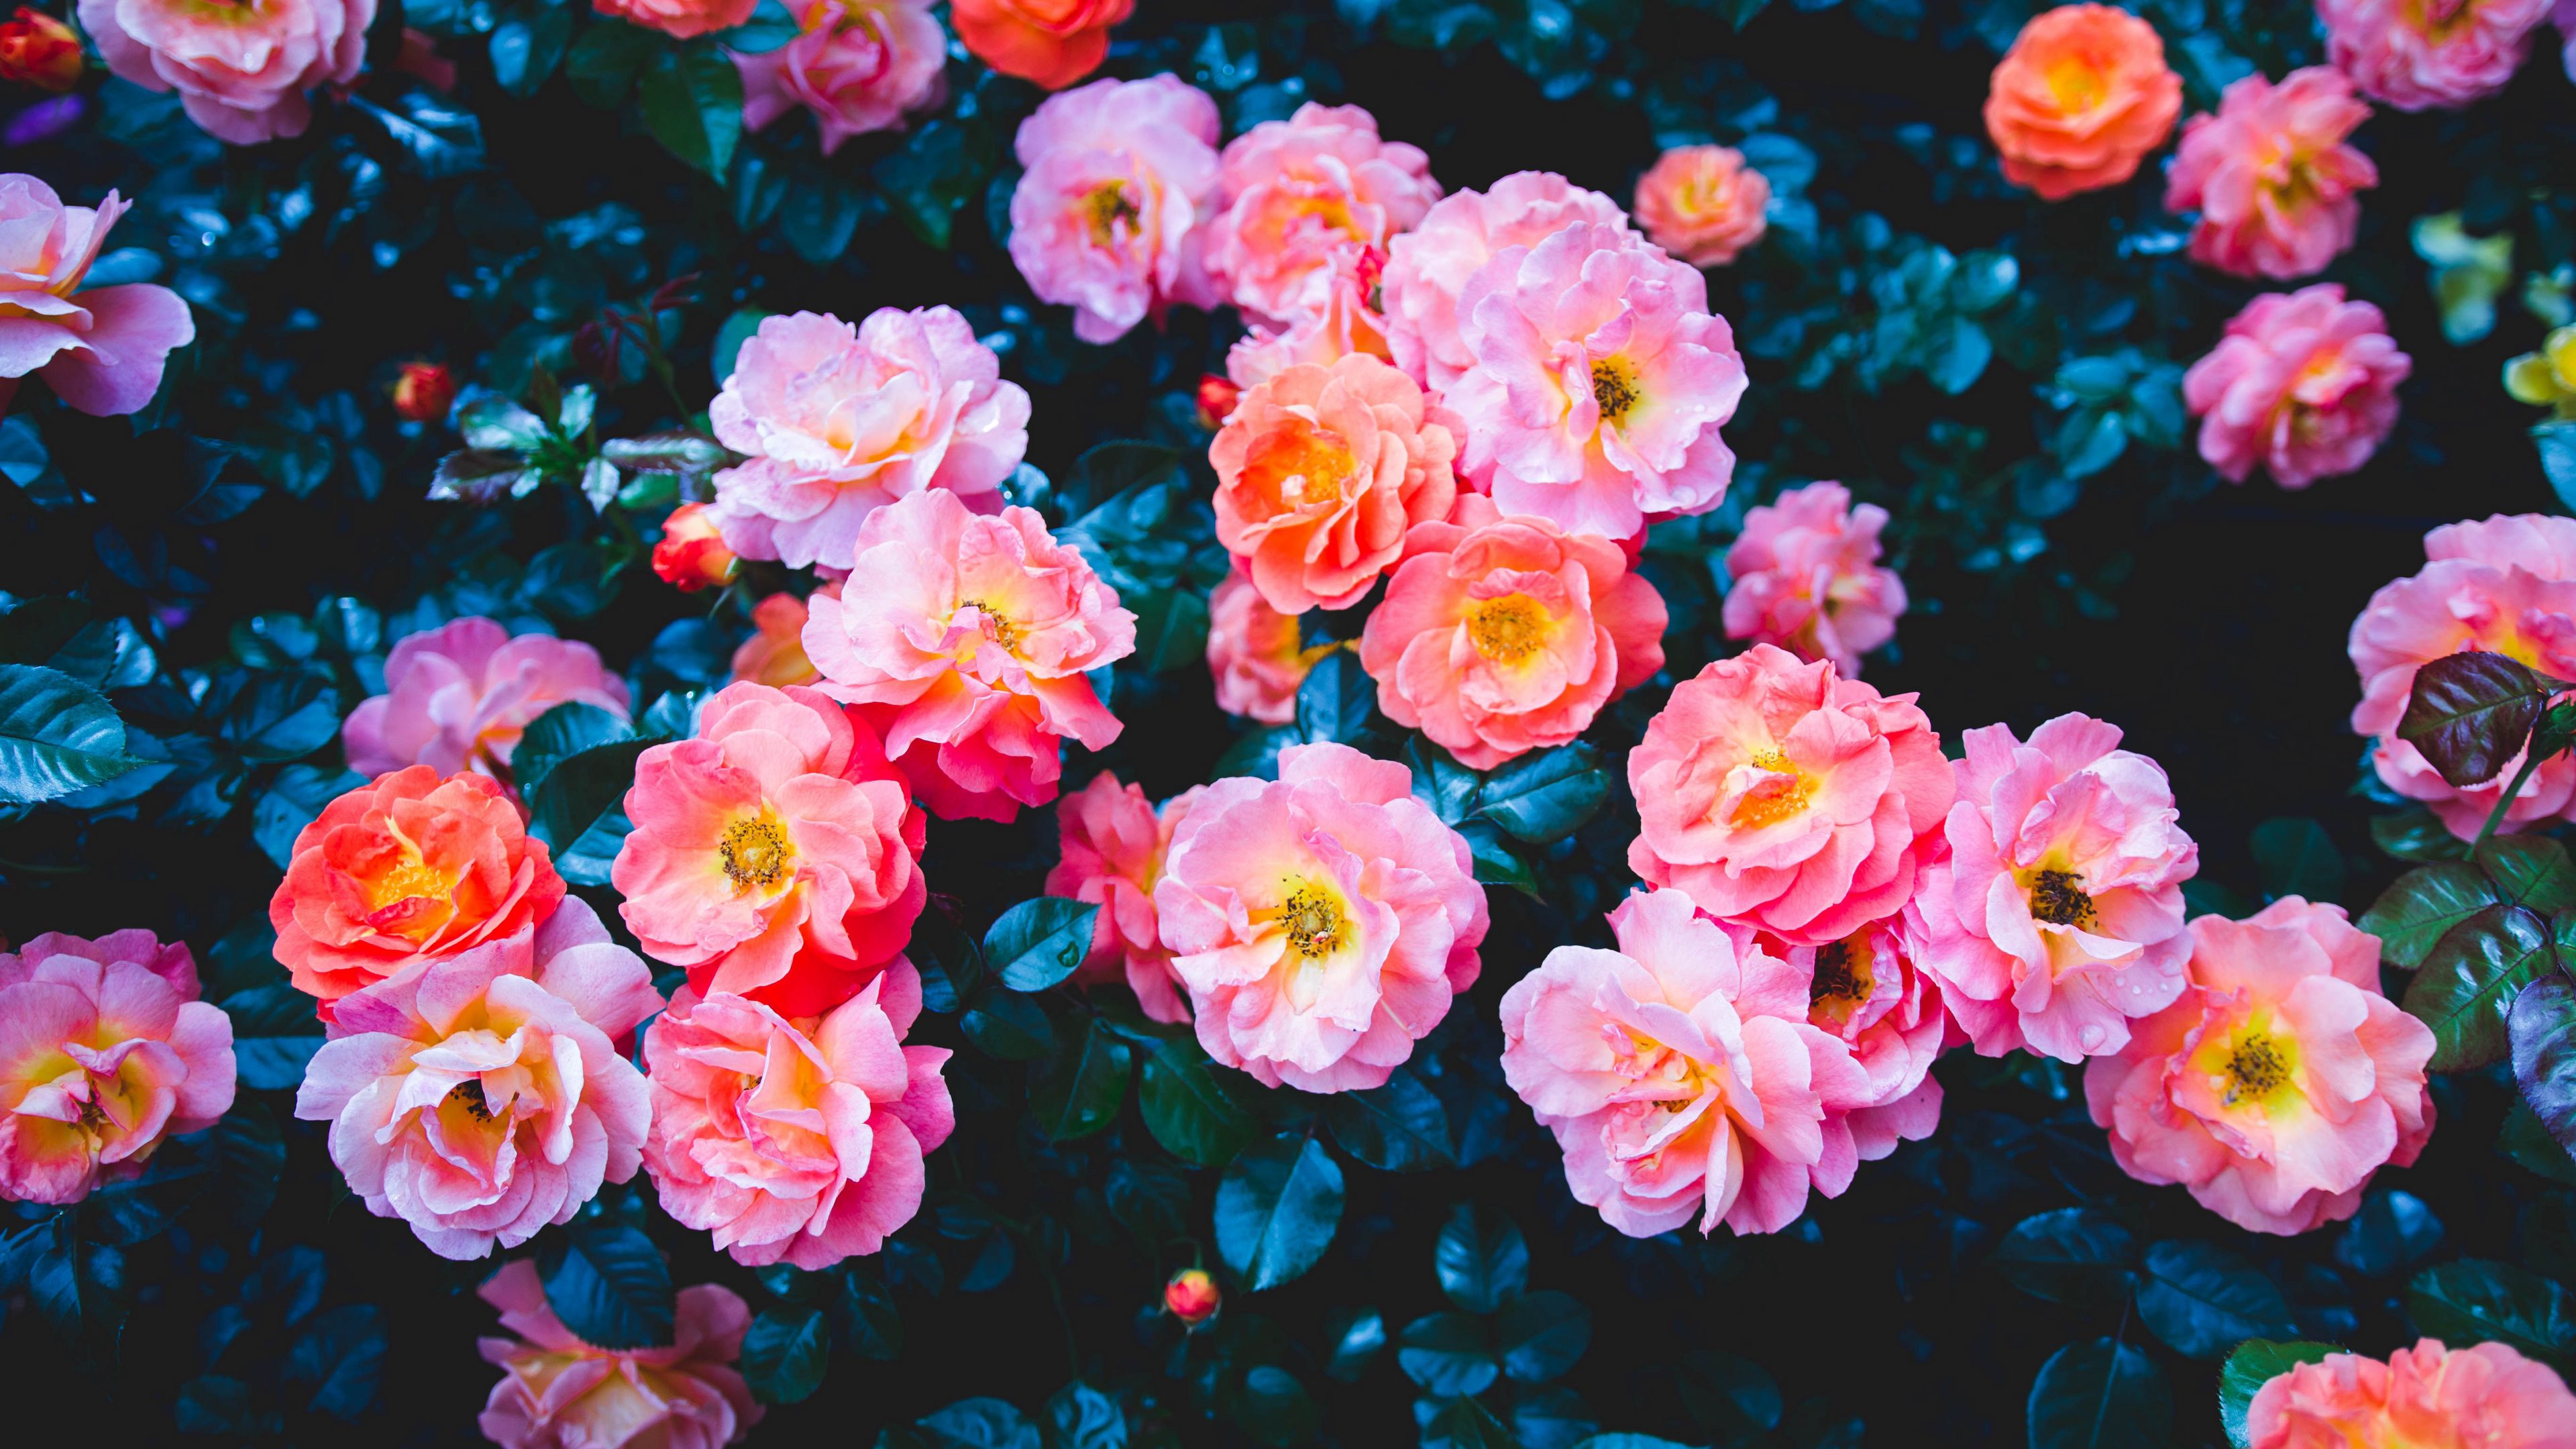 roses flowers pink bloom bush 4k 1692284604